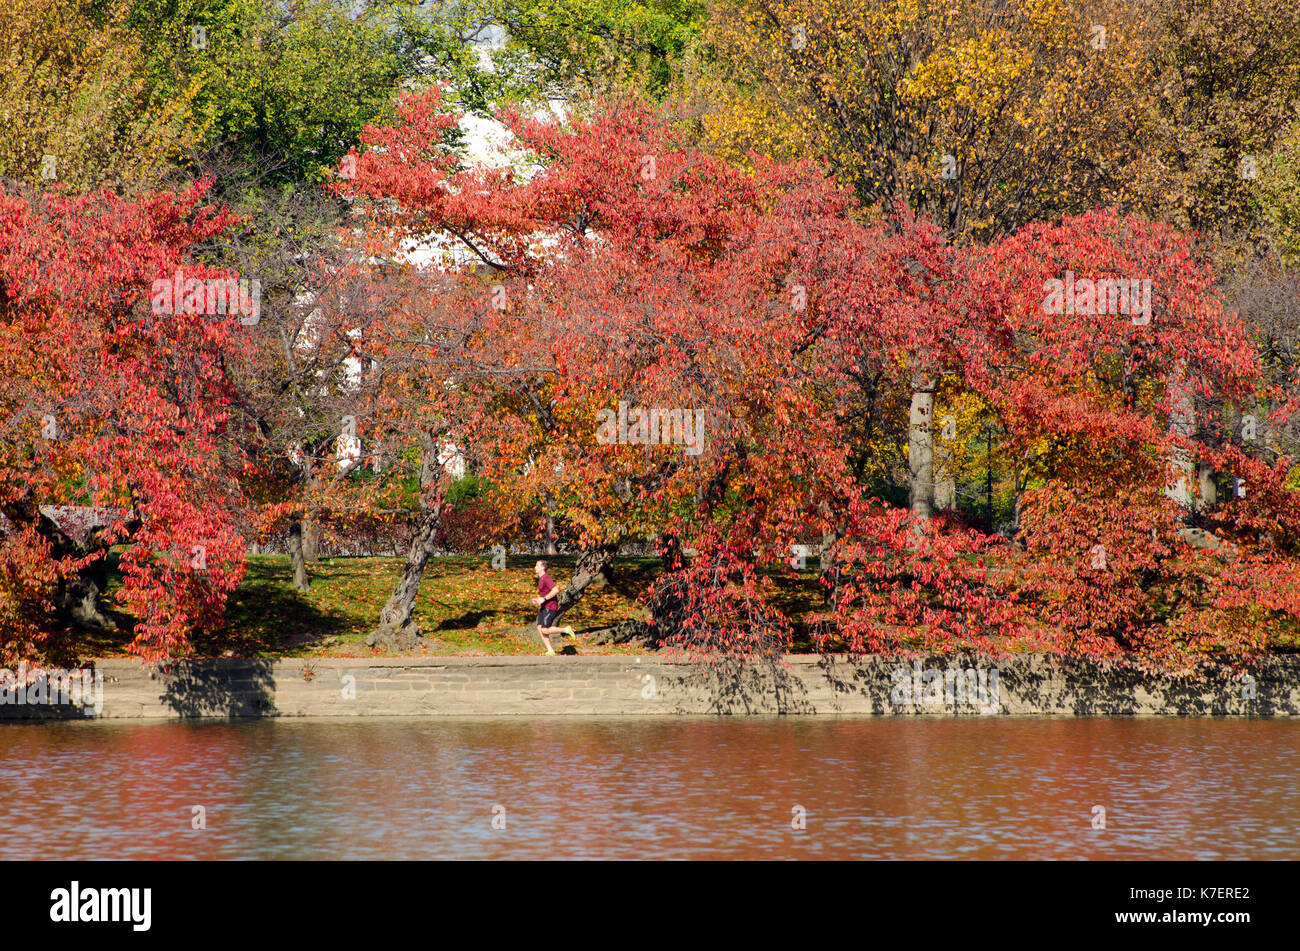 Famed ciliegi girare arancio brillante e di colore giallo durante l'autunno a Washington DC. Foto Stock